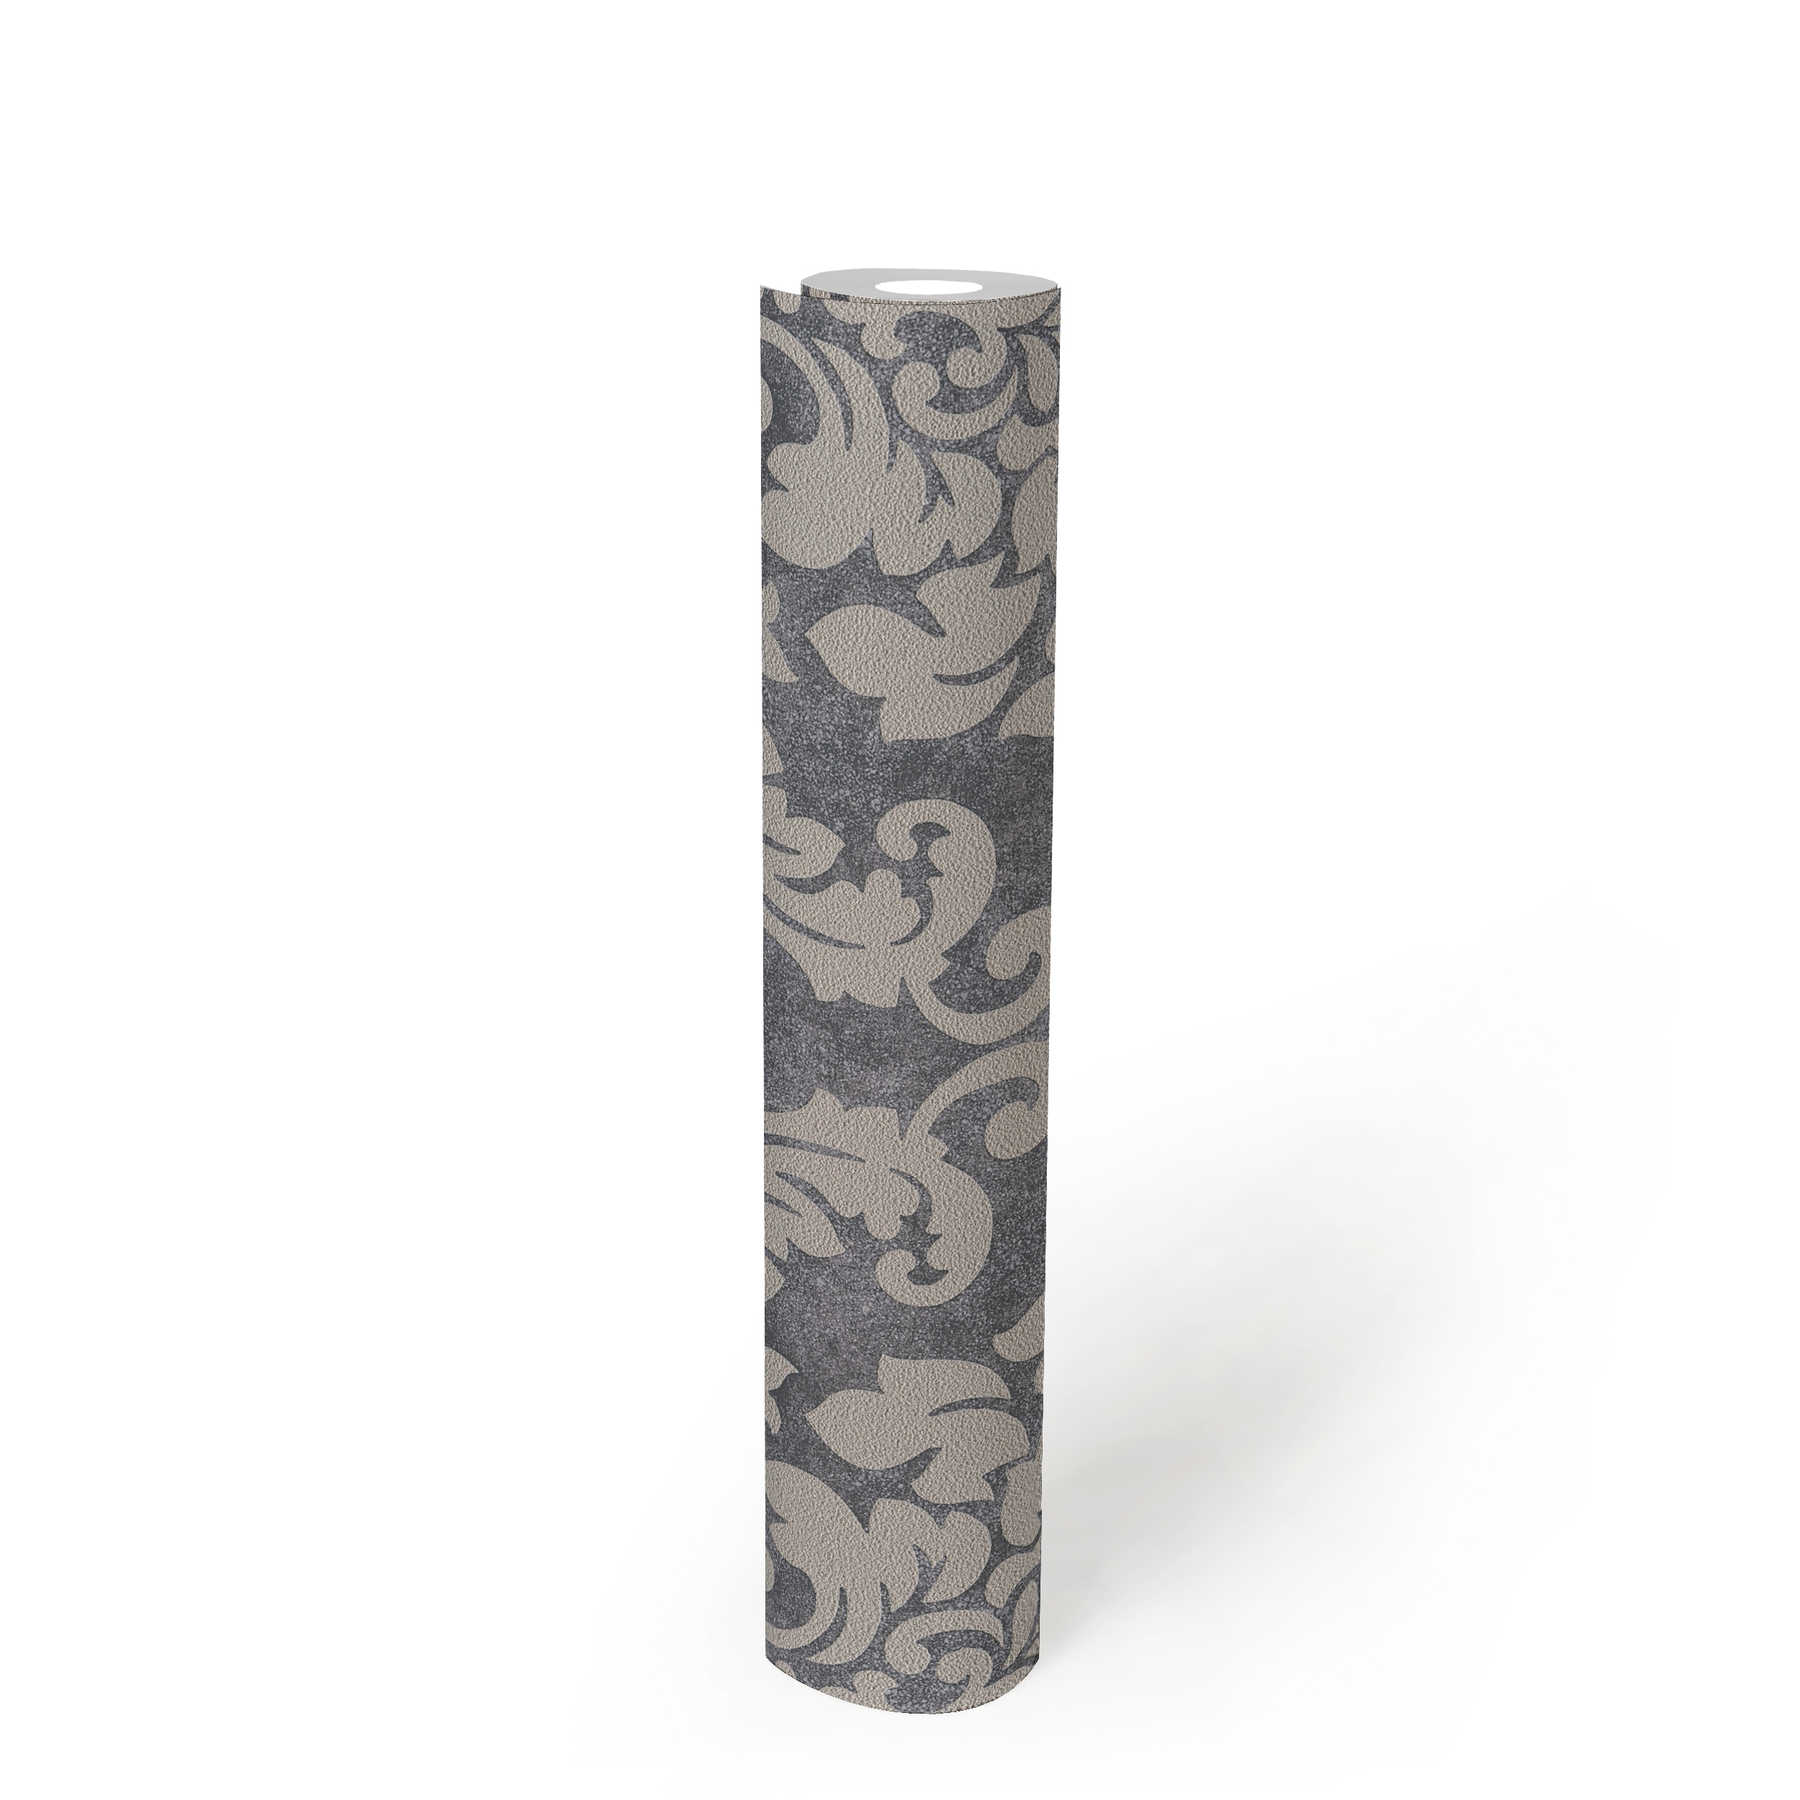             Florale Ornamenttapete mit Metallic-Effekt – Grau, Beige, Silber
        